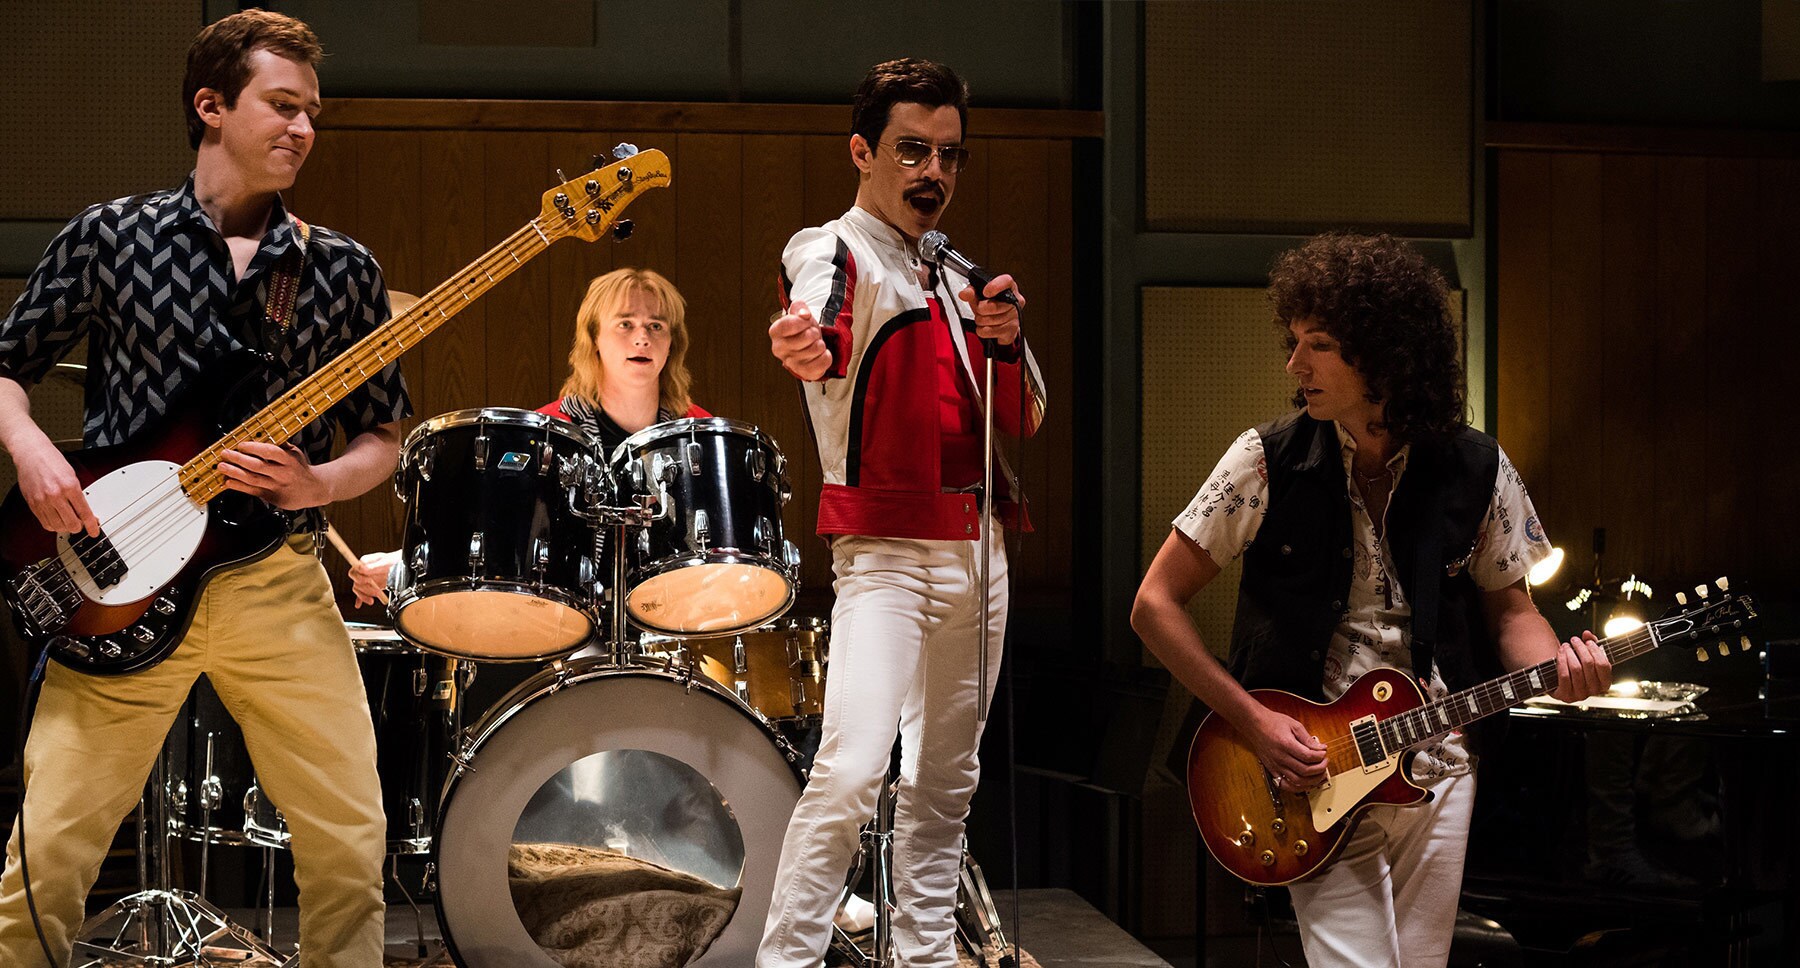 Actors Rami Malek (as Freddie Mercury) and Gwilym Lee (as Brian May) in the movie "Bohemian Rhapsody"